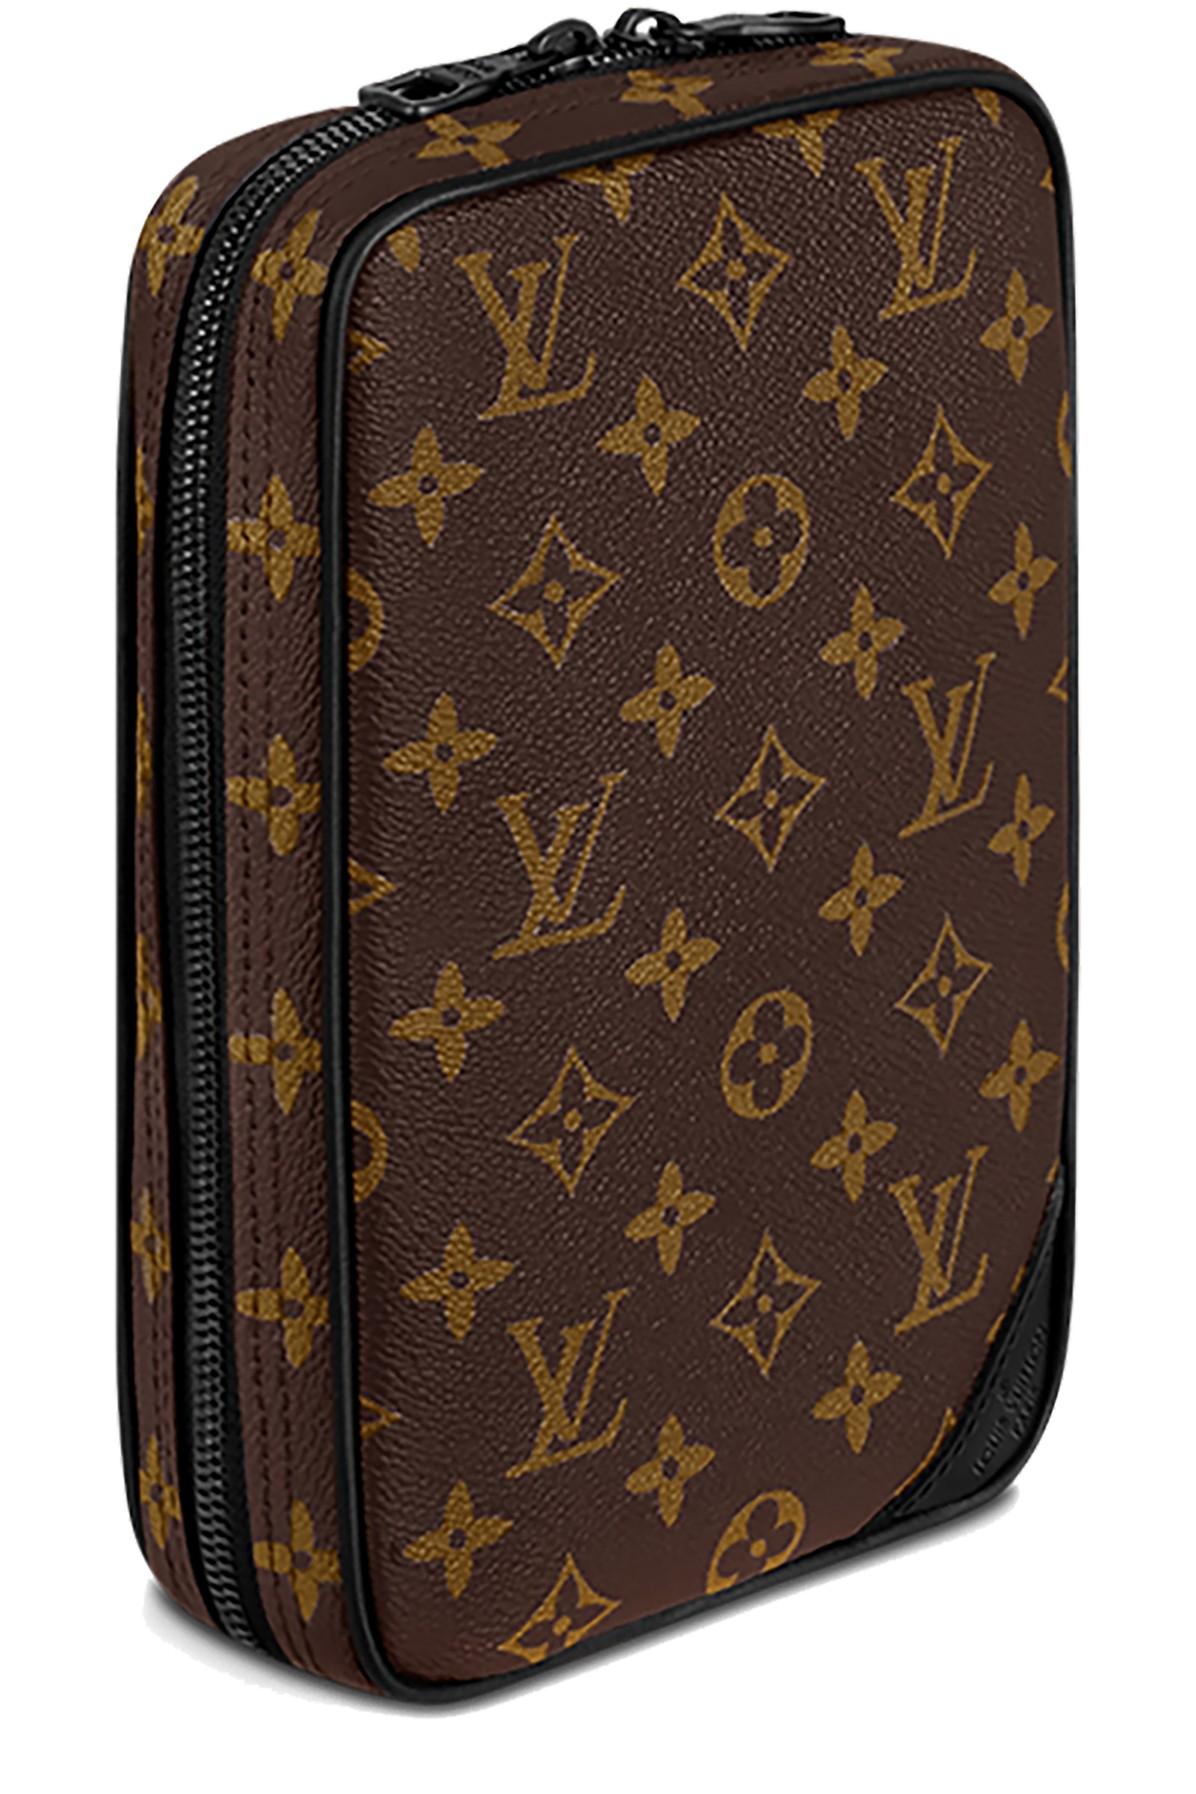 Louis Vuitton Men's Monogram Canvas Monogram Utility Side Bag M44477 –  Luxuria & Co.